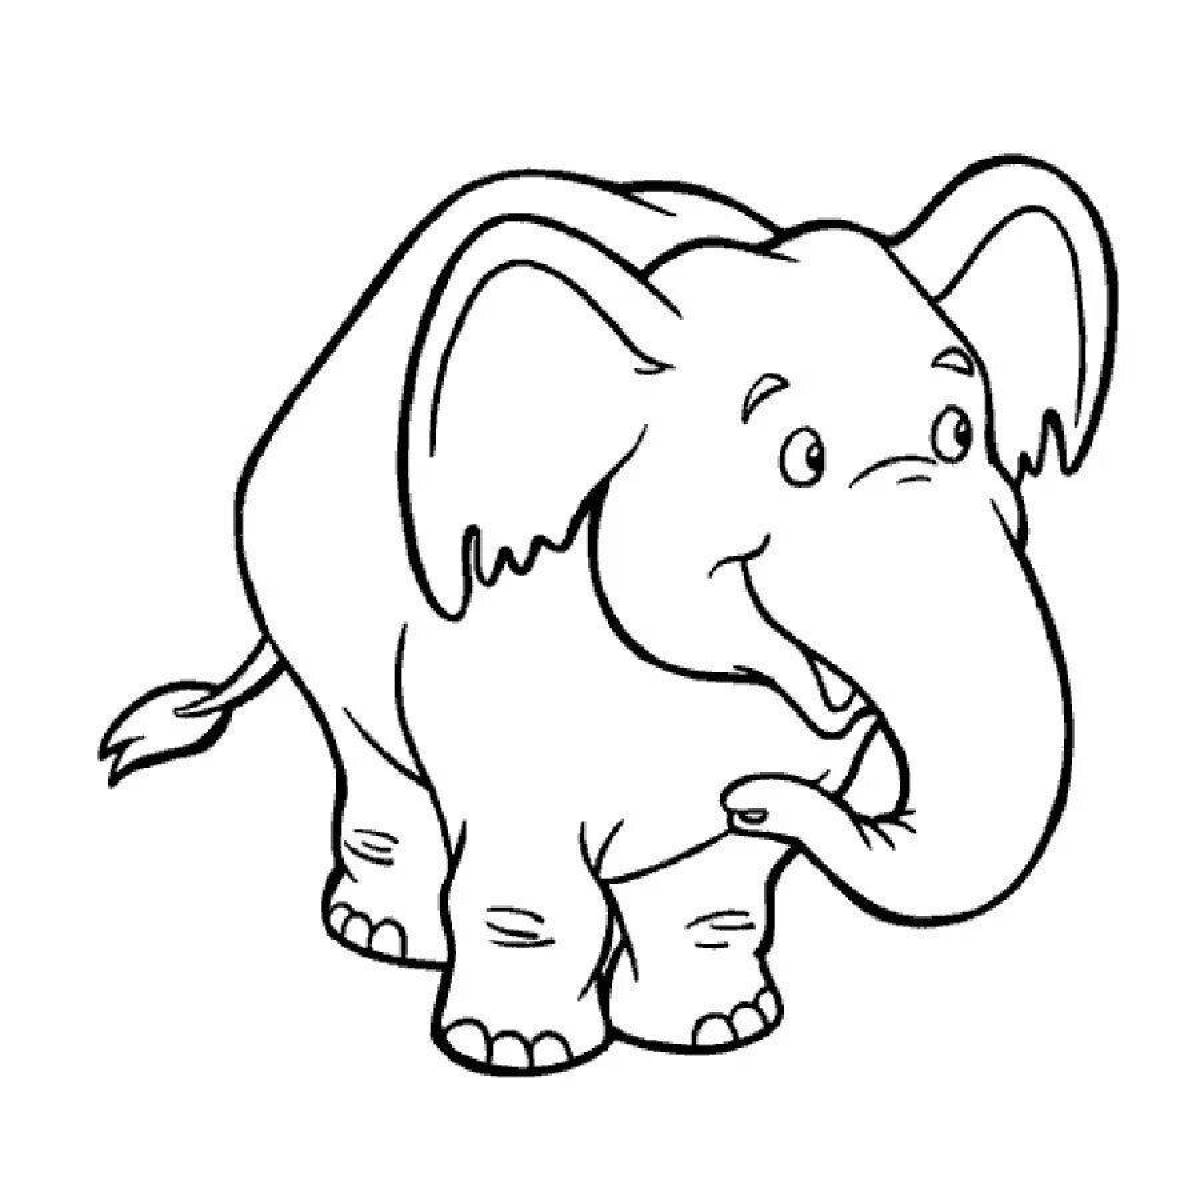 Увлекательная раскраска слонов для детей